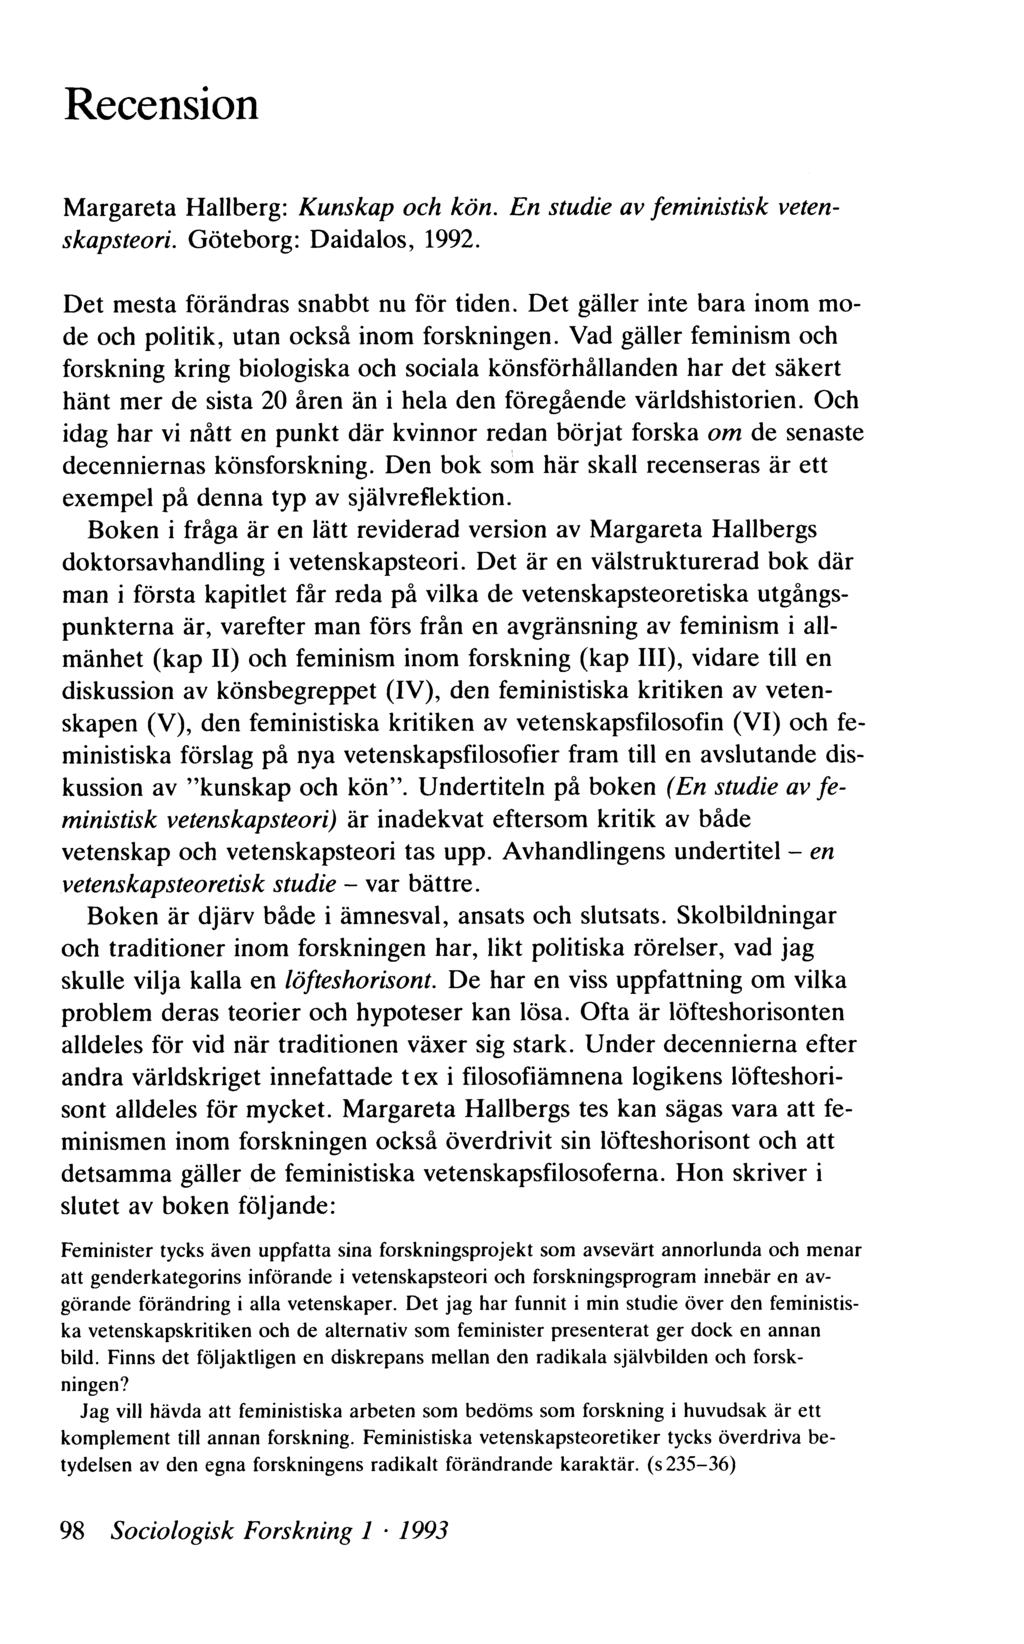 Recension M argareta Hallberg: Kunskap och kön. En studie av fem inistisk vetenskapsteori. Göteborg: Daidalos, 1992. Det mesta förändras snabbt nu för tiden.